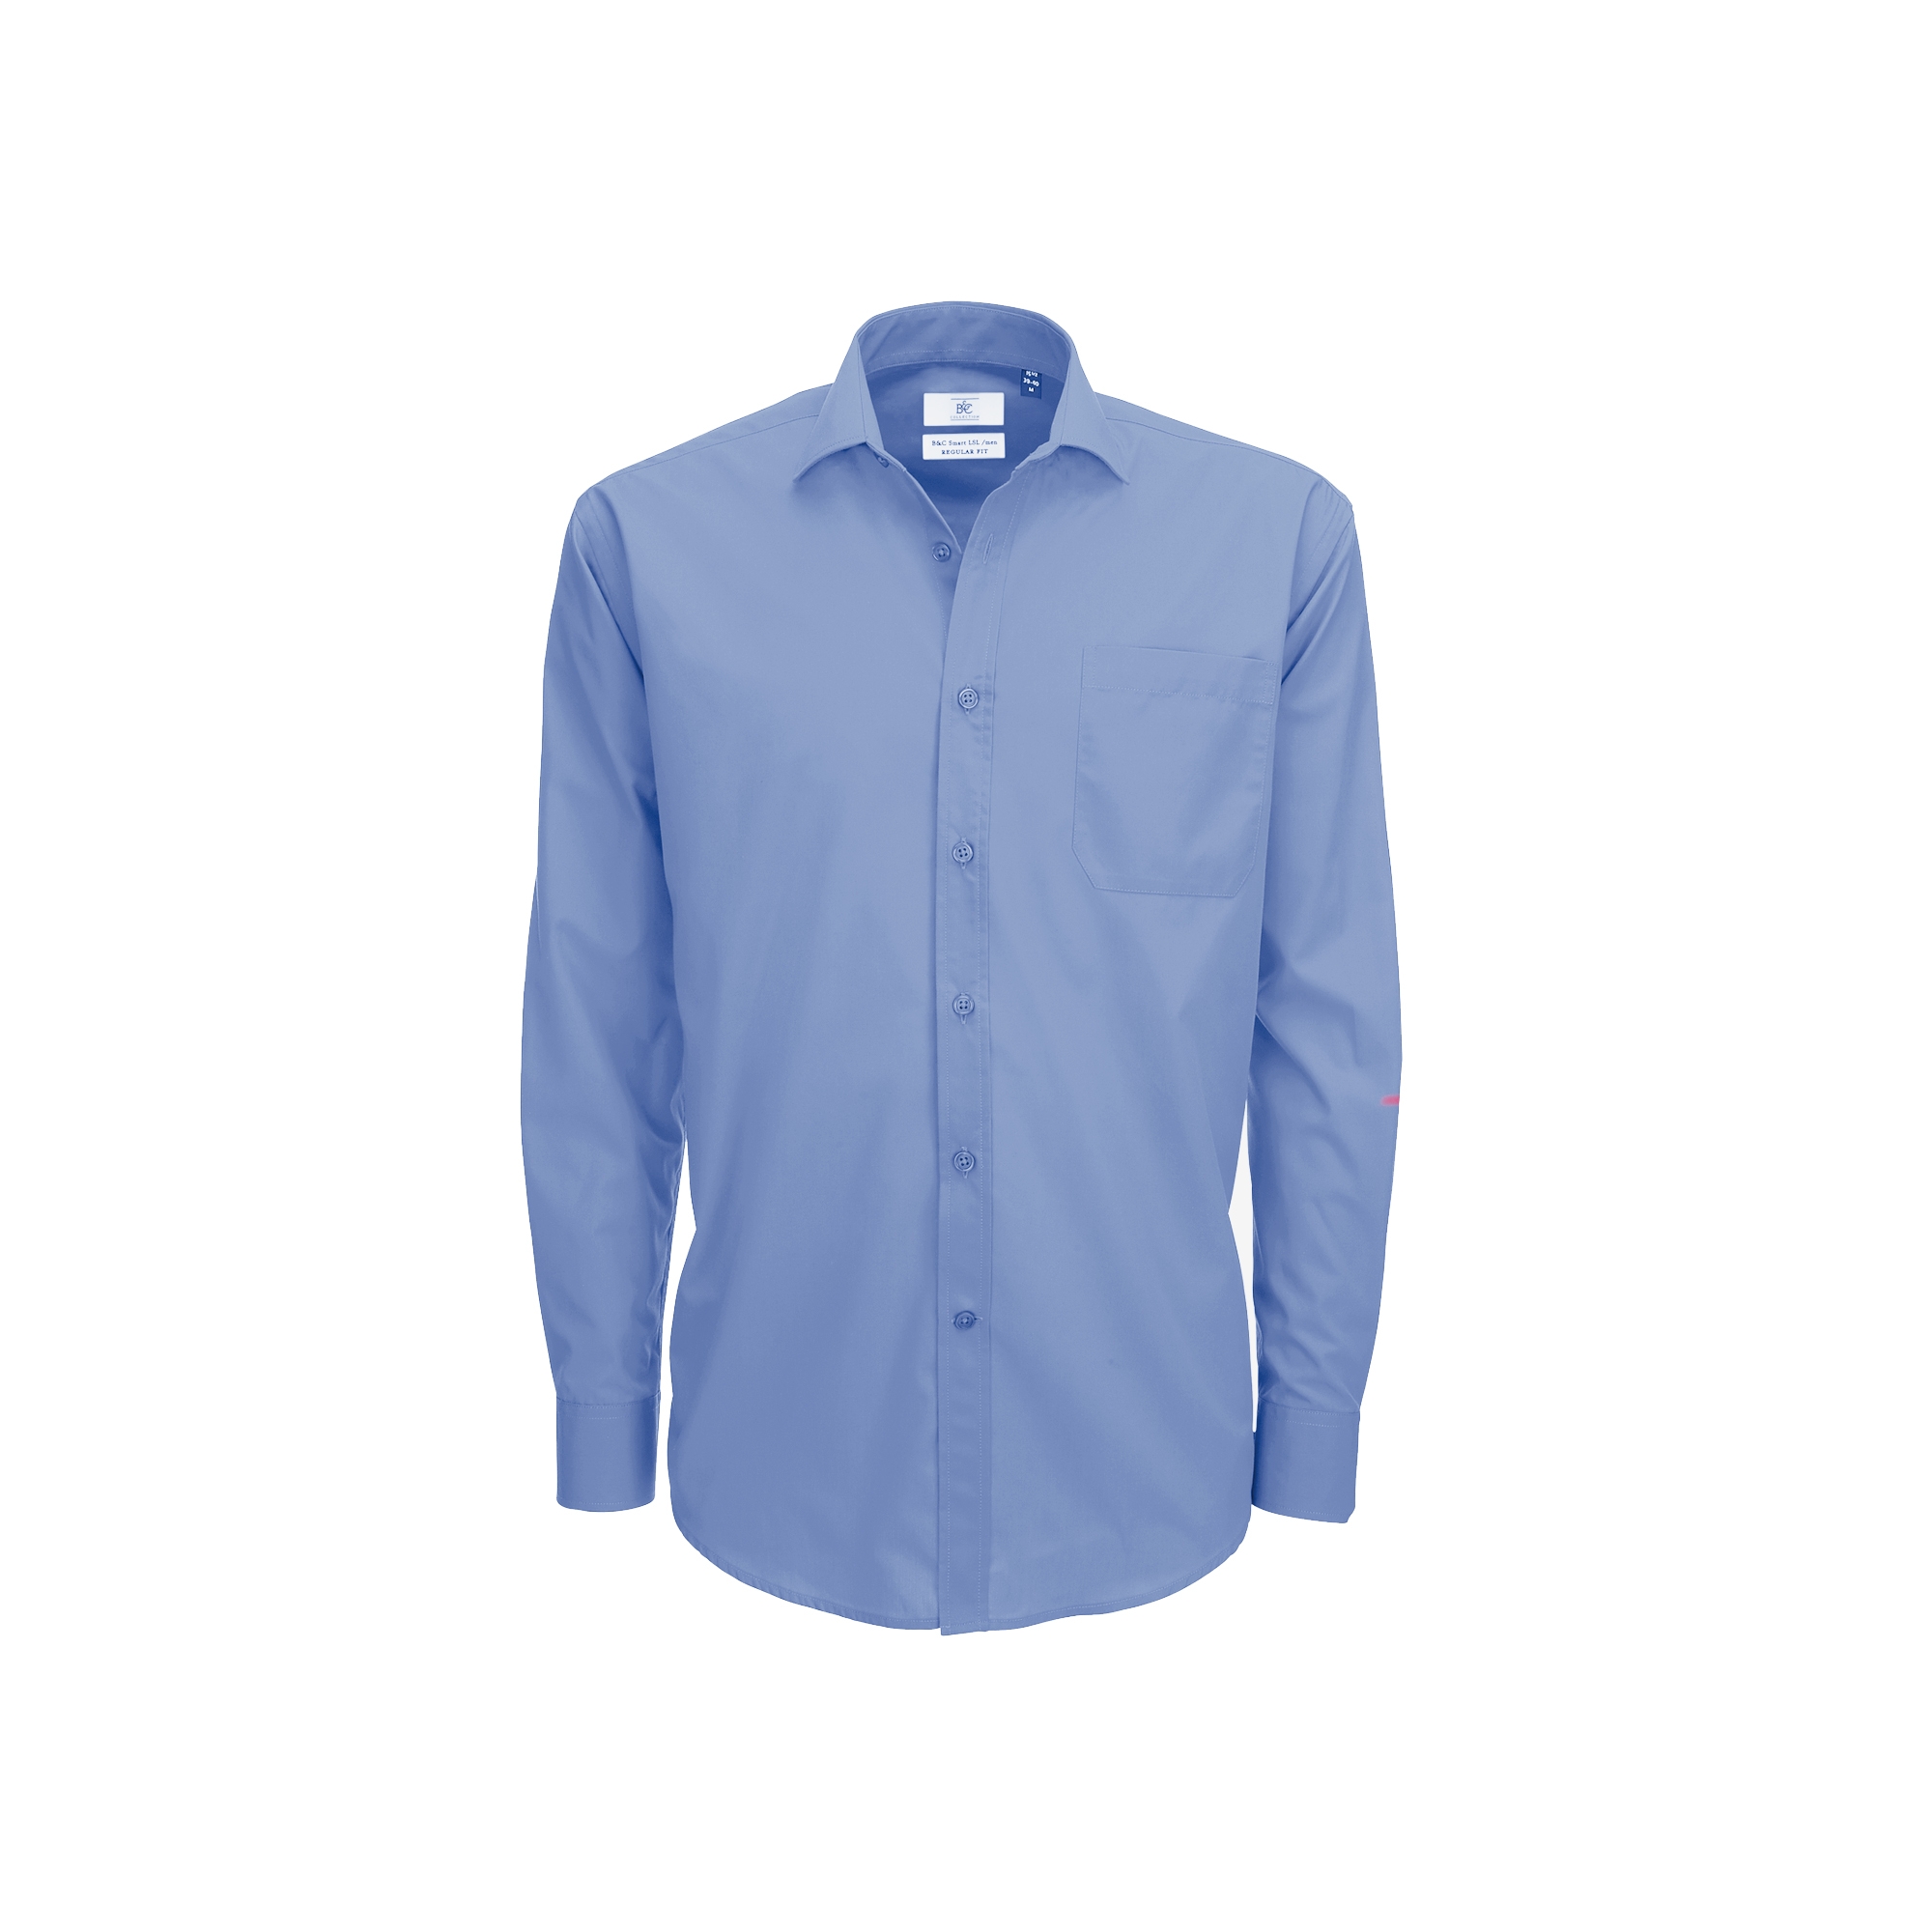 Рубашка мужская с длинным рукавом LSL/men, корпоративный голубой, полиэстер, хлопок